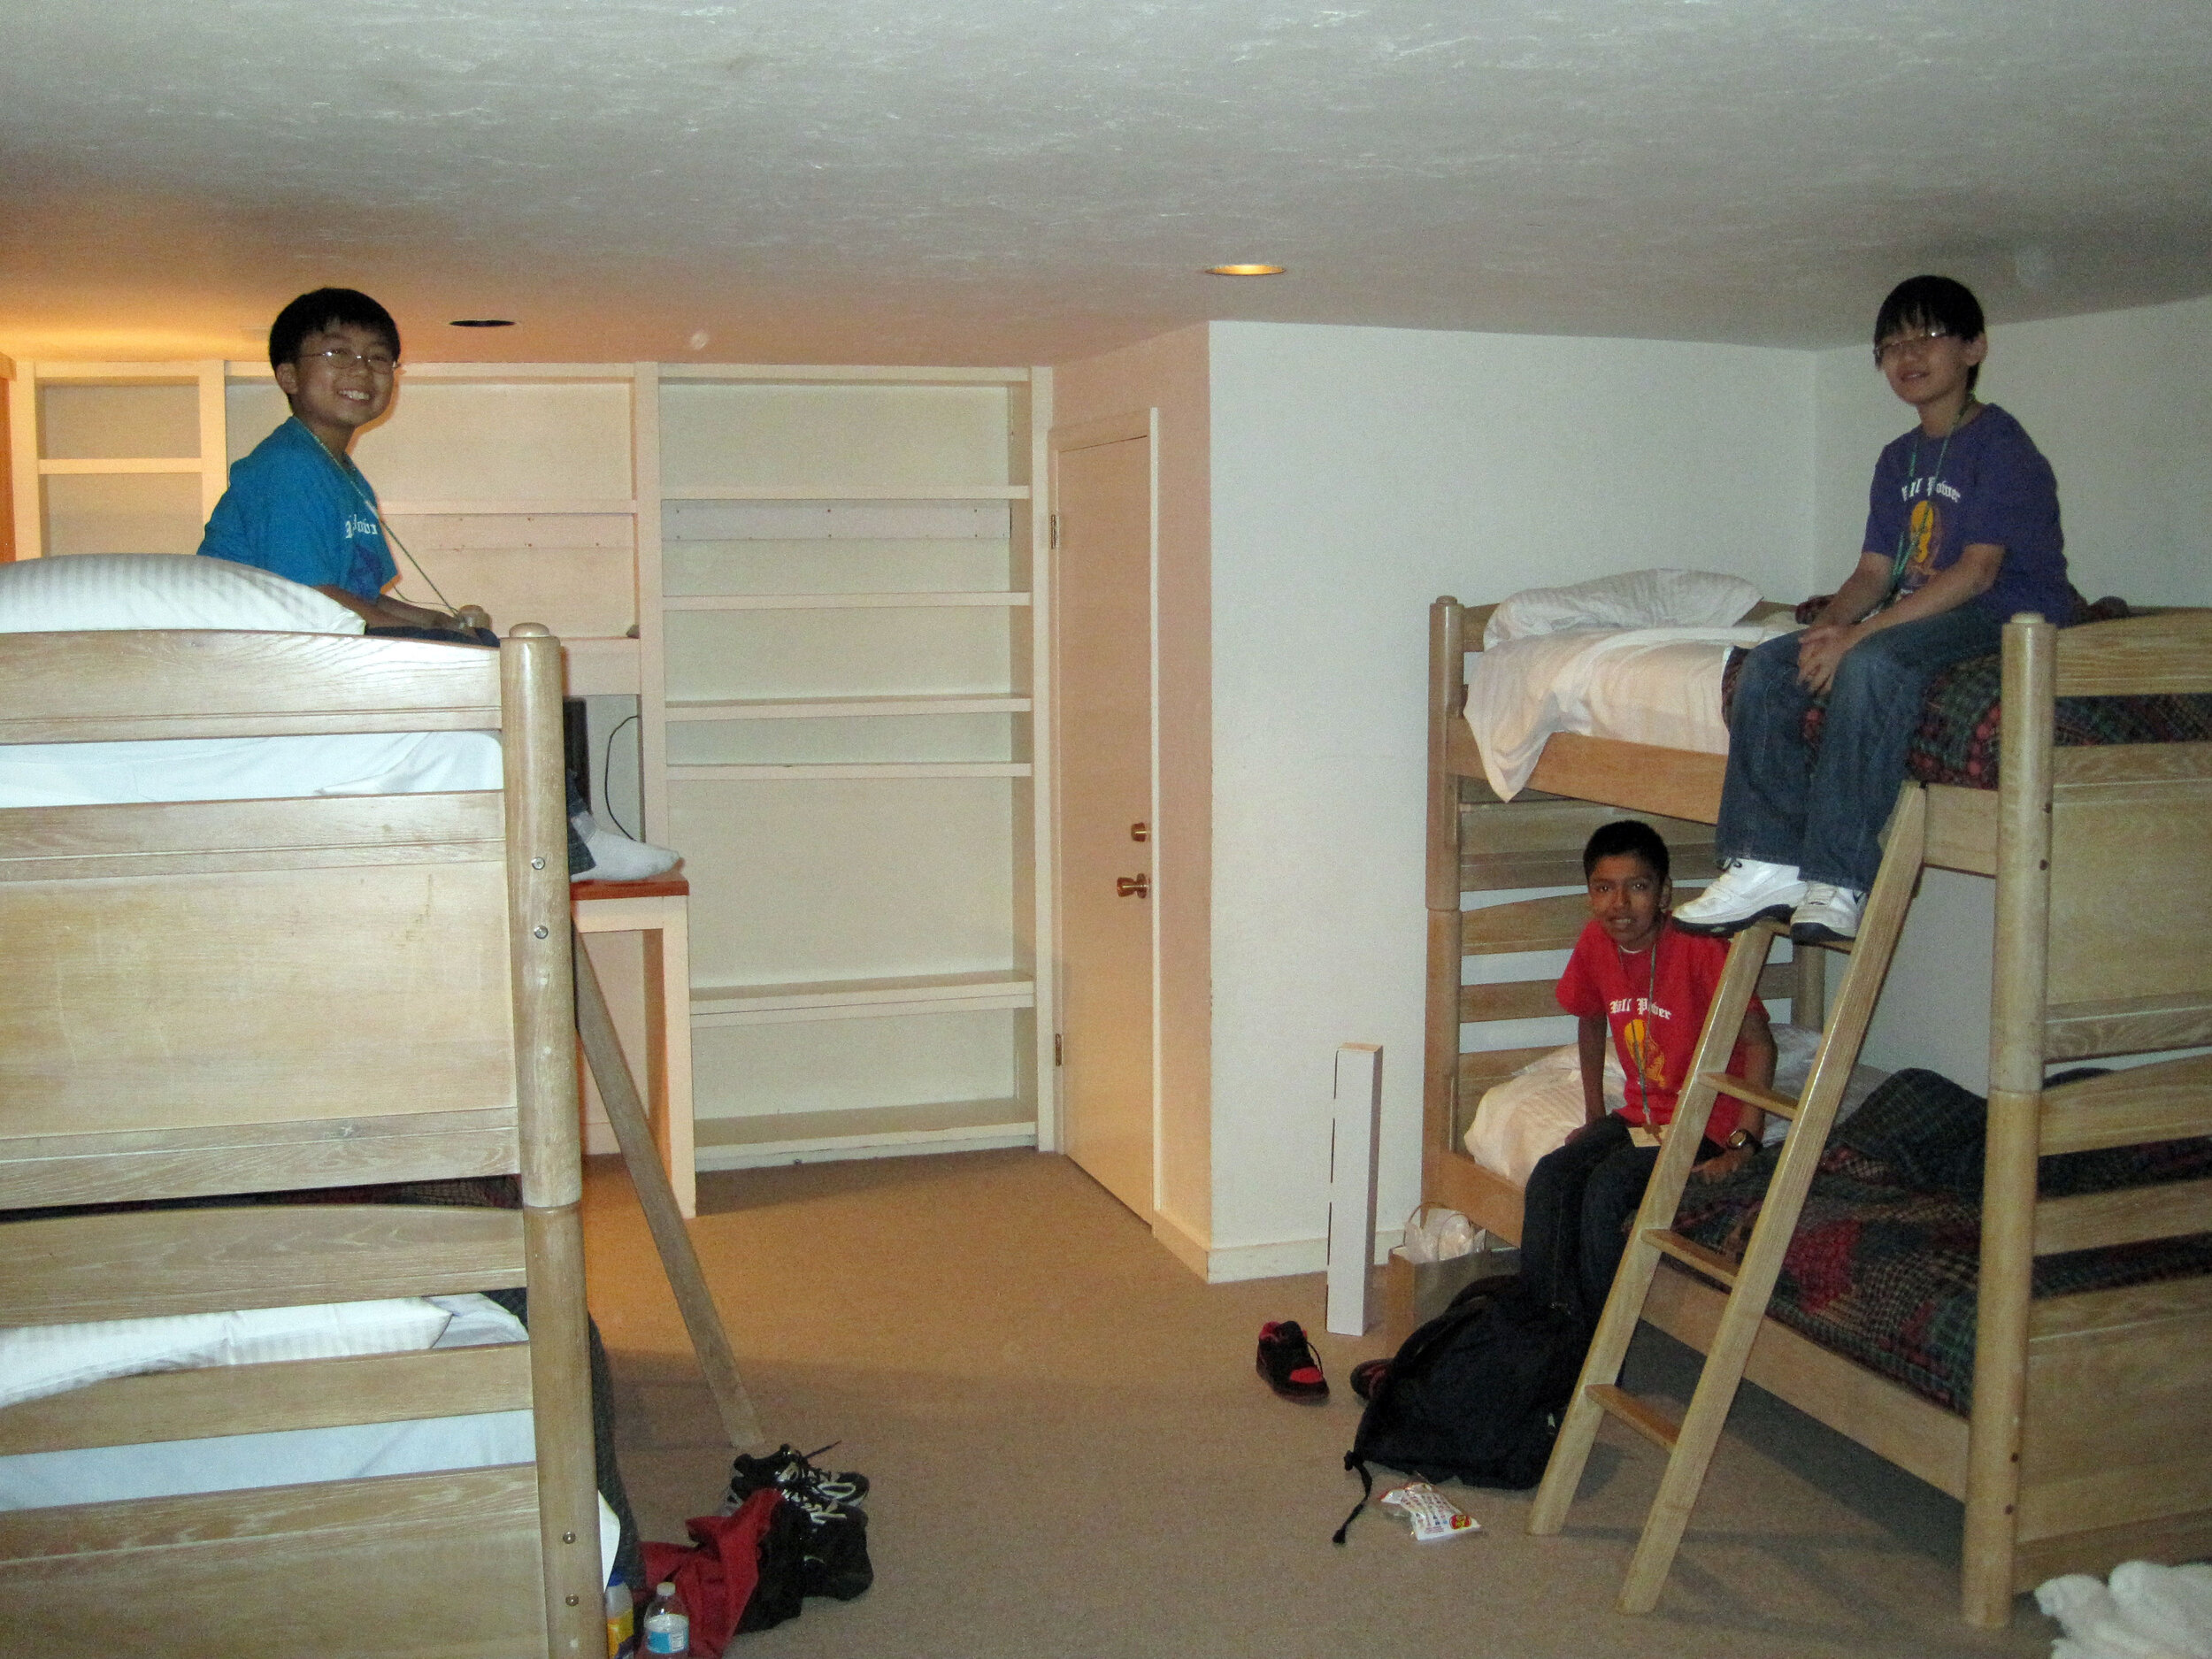  The boys' room 